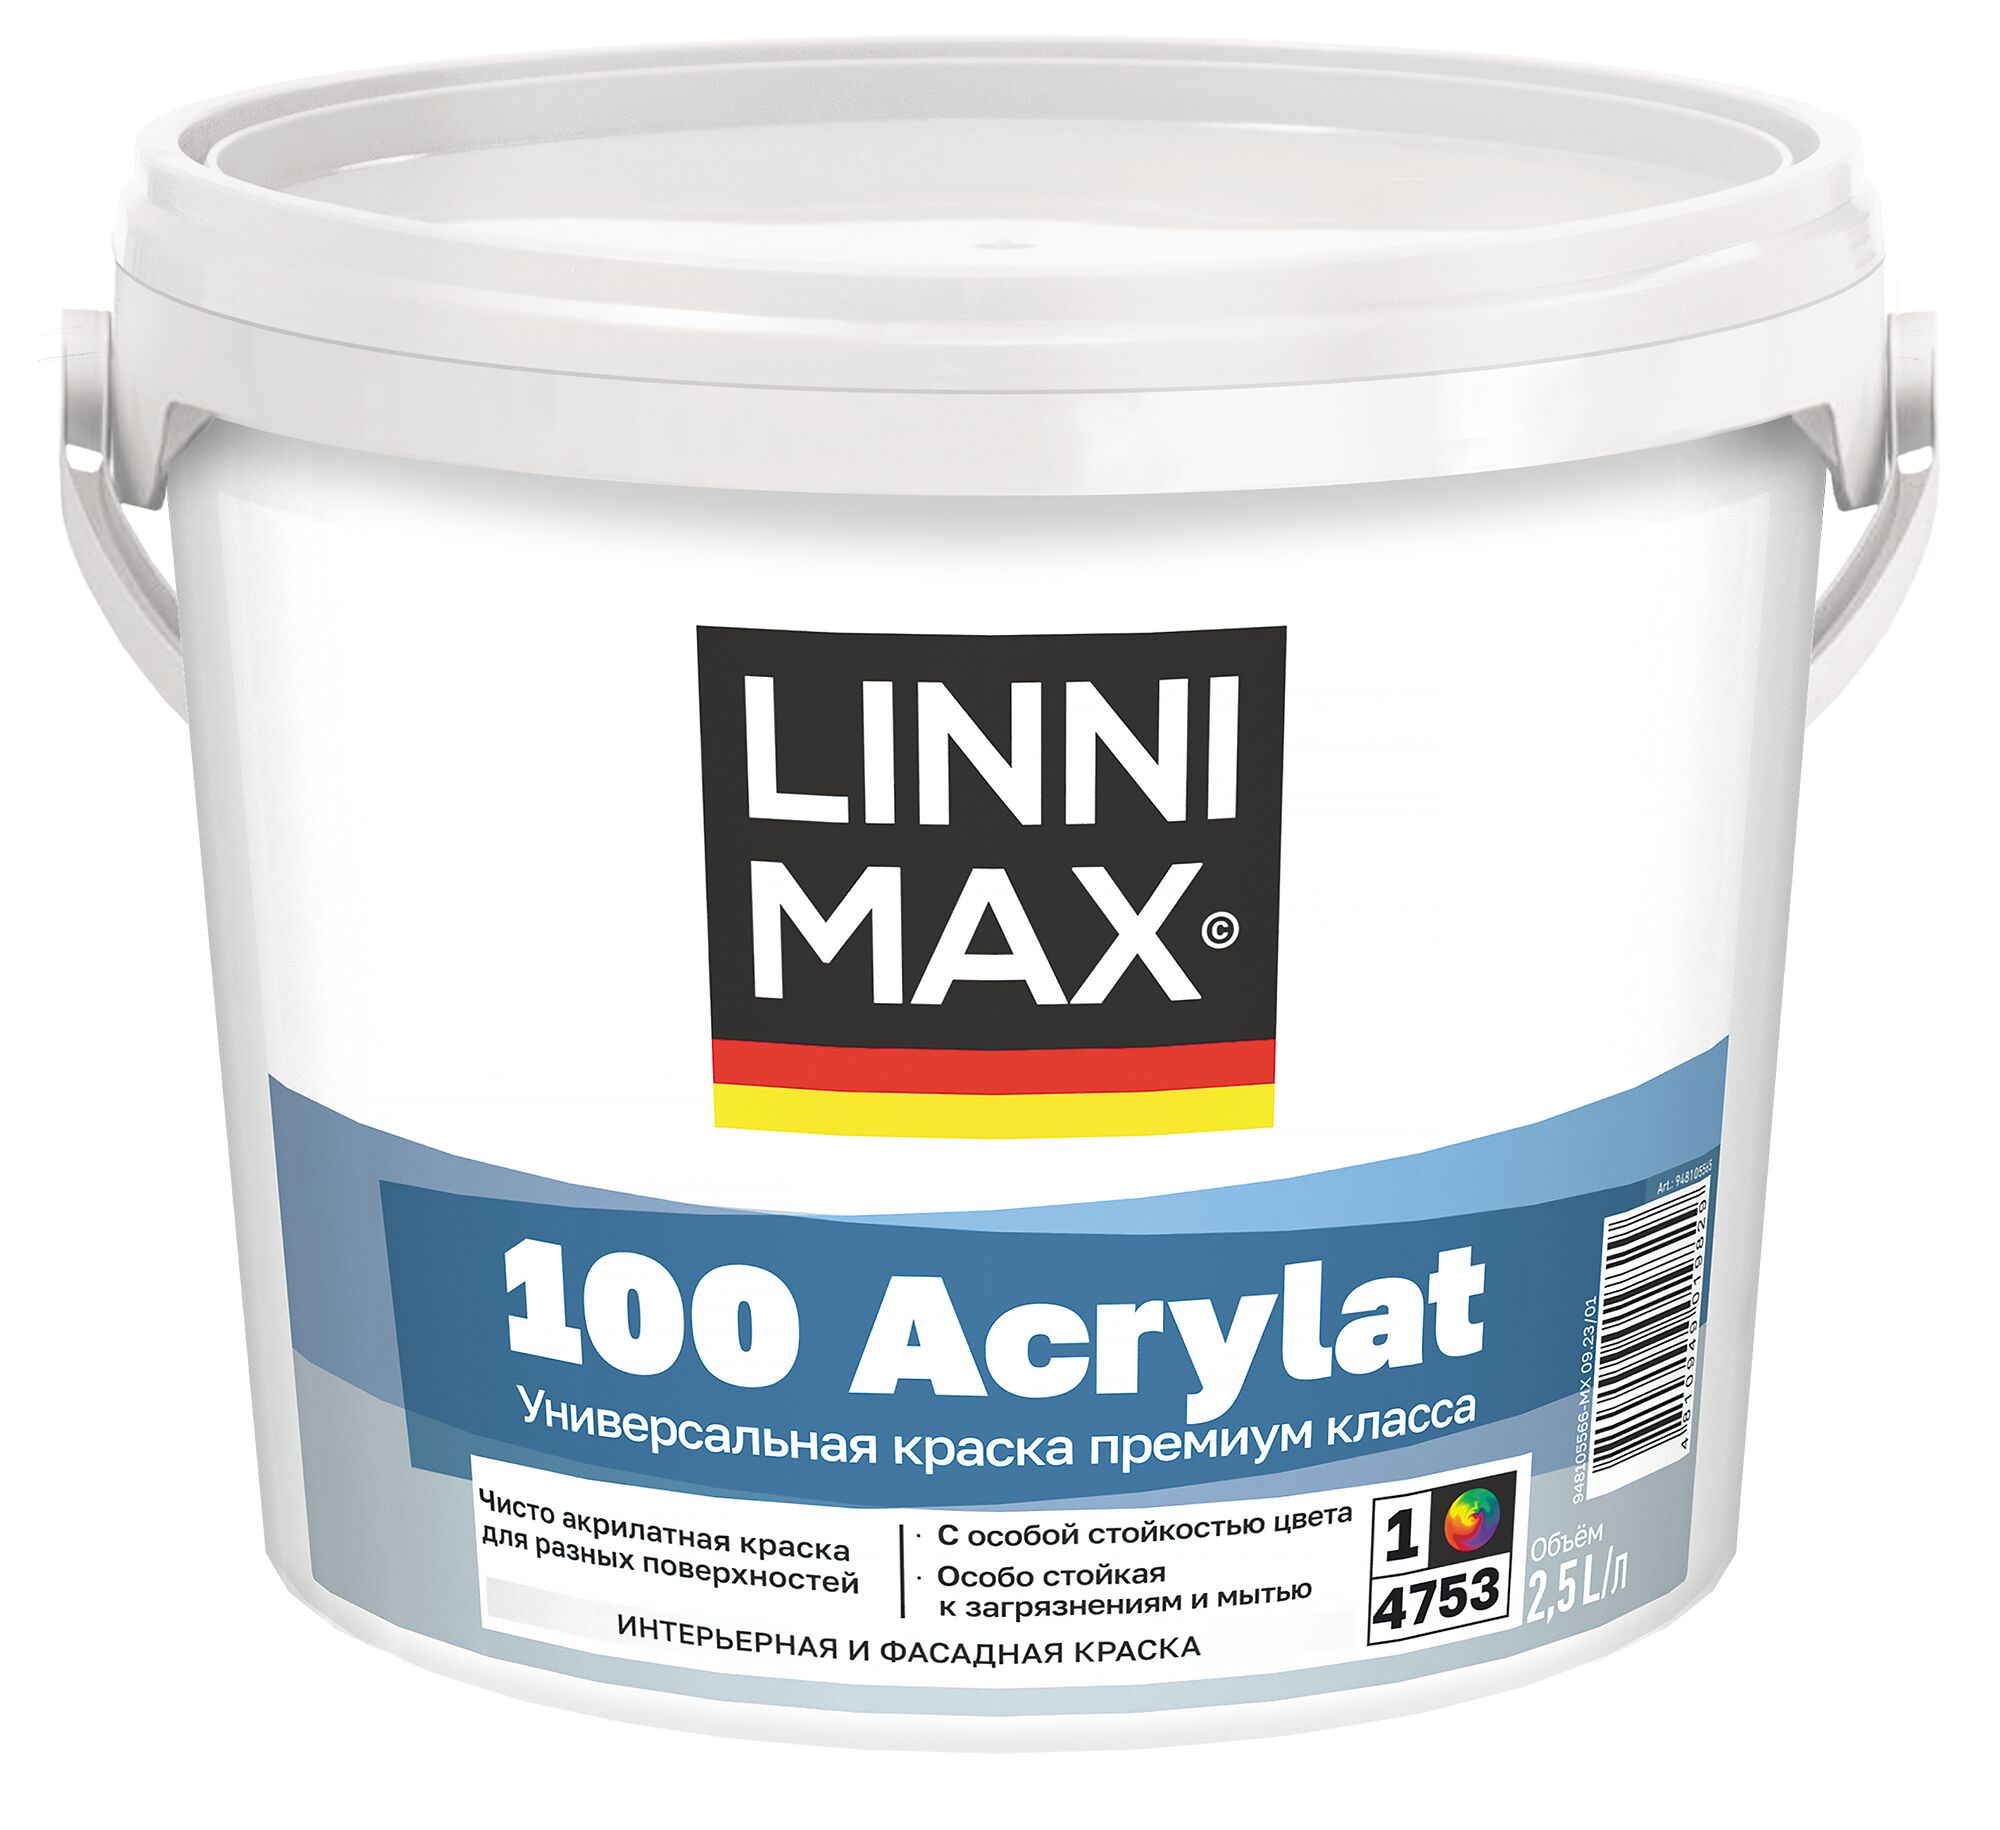 100 Acrylat 2,5л Краска водно-дисперсионная для наружных и внутренних работ База1 LINNIMAX, 100 Acrylat 2,5л Краска водно-дисперсионная для наружных и внутренних работ База1 LINNIMAX